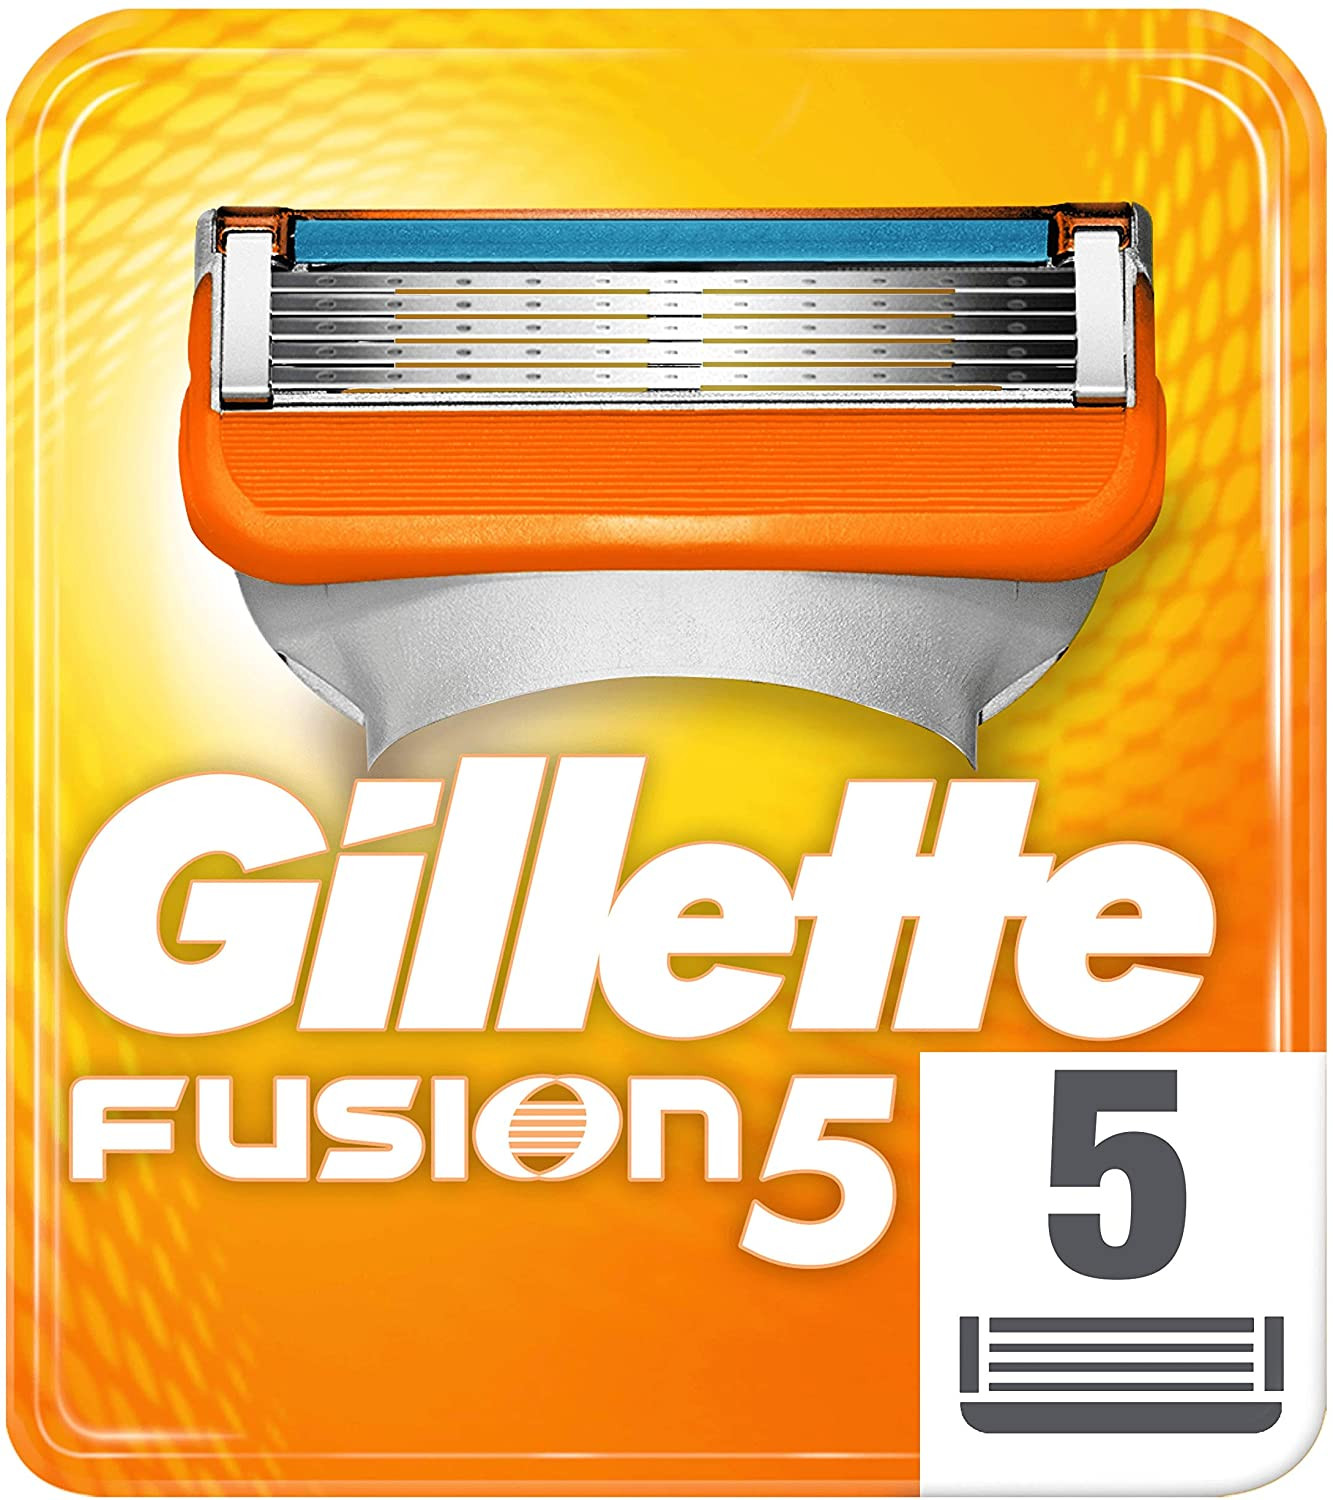 lamette Fusion5 Gilette per gli...